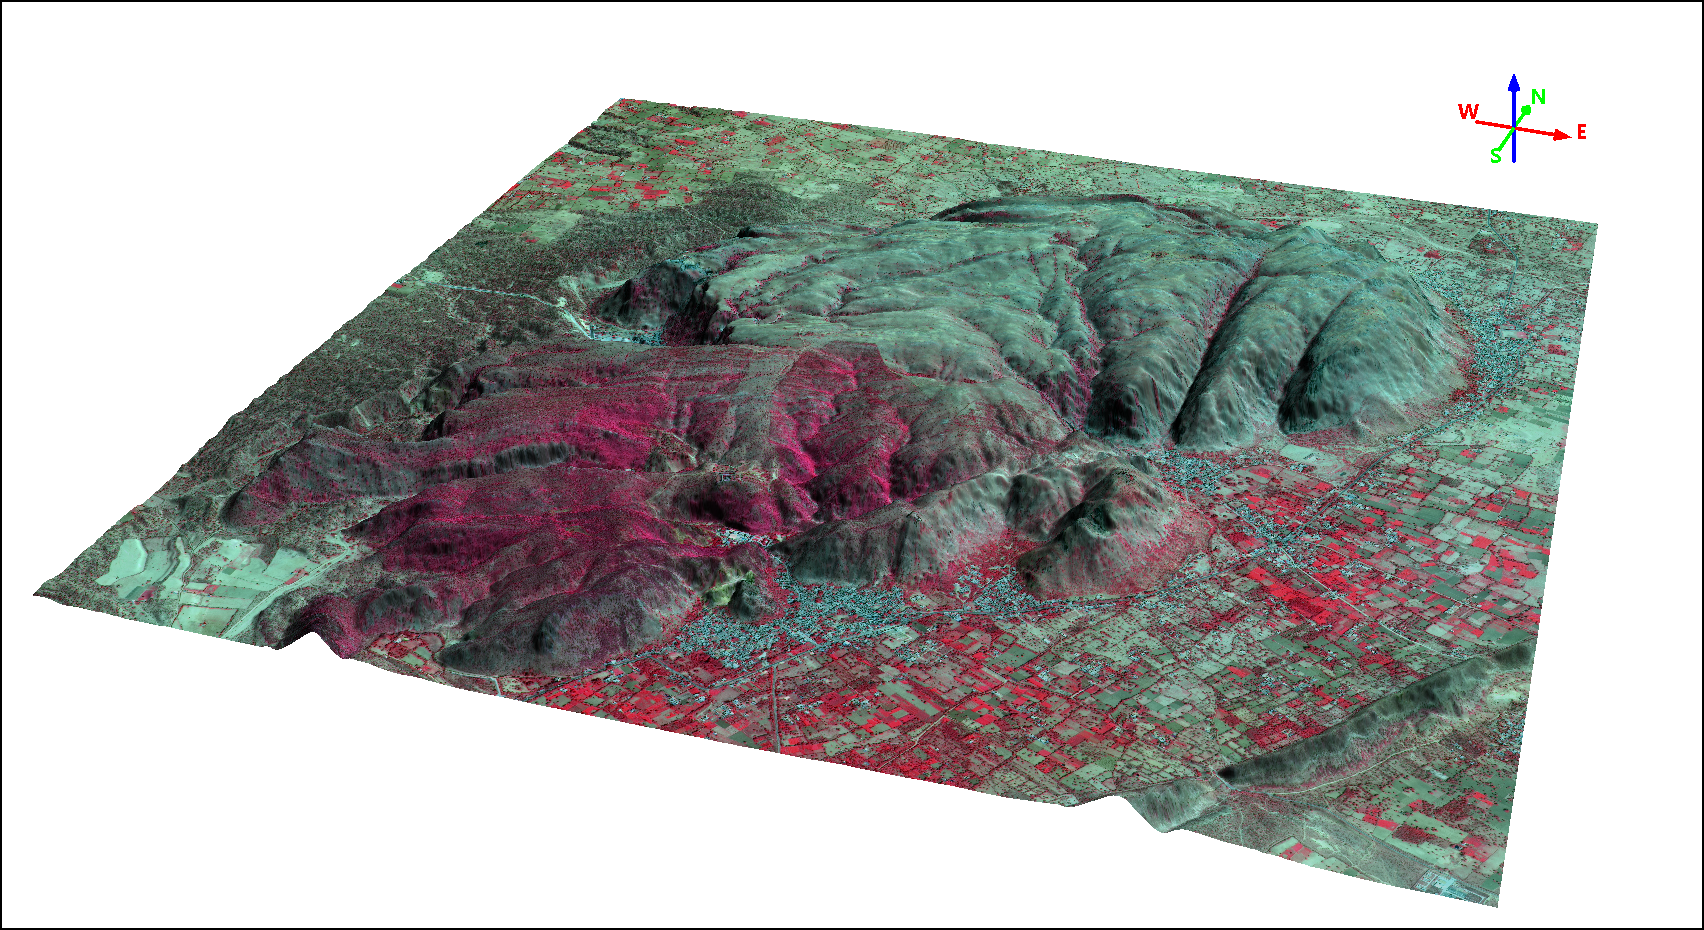 Imagem SuperView-1 Cor Infravermelho Sobreposta em Modelo Digital de Terreno (MDT)